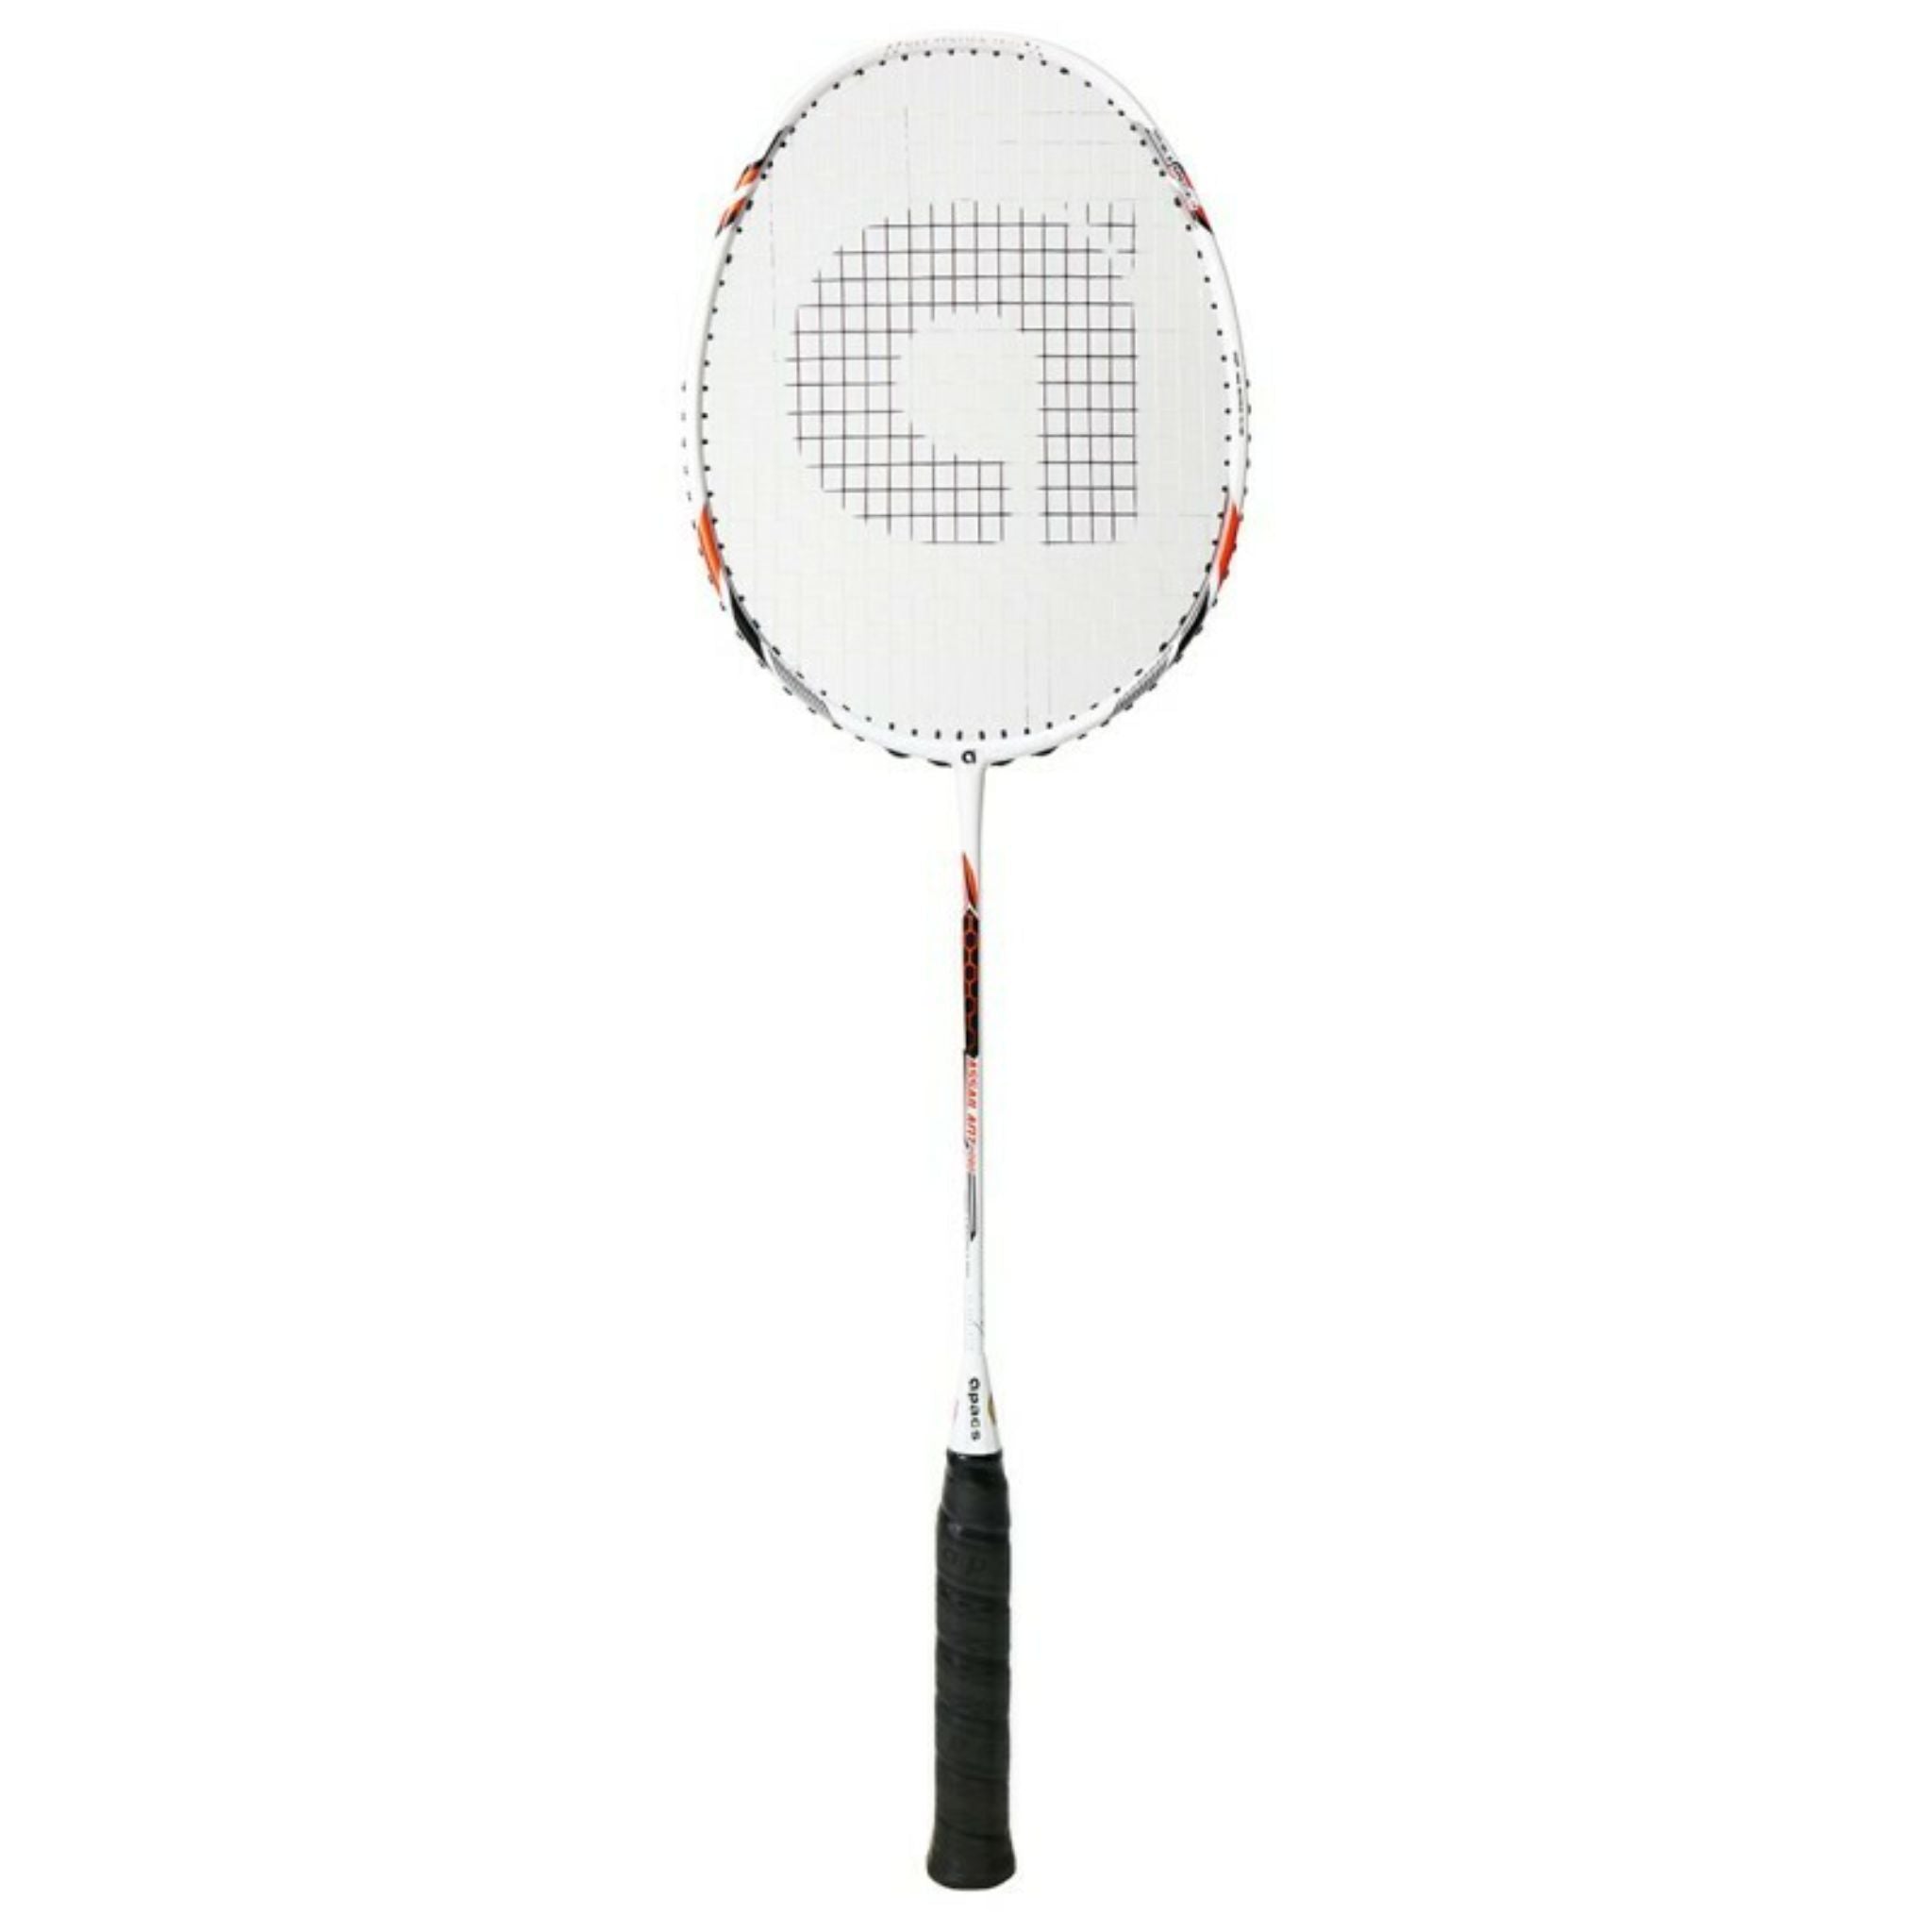 APACS Assailant Pro Badminton Racket